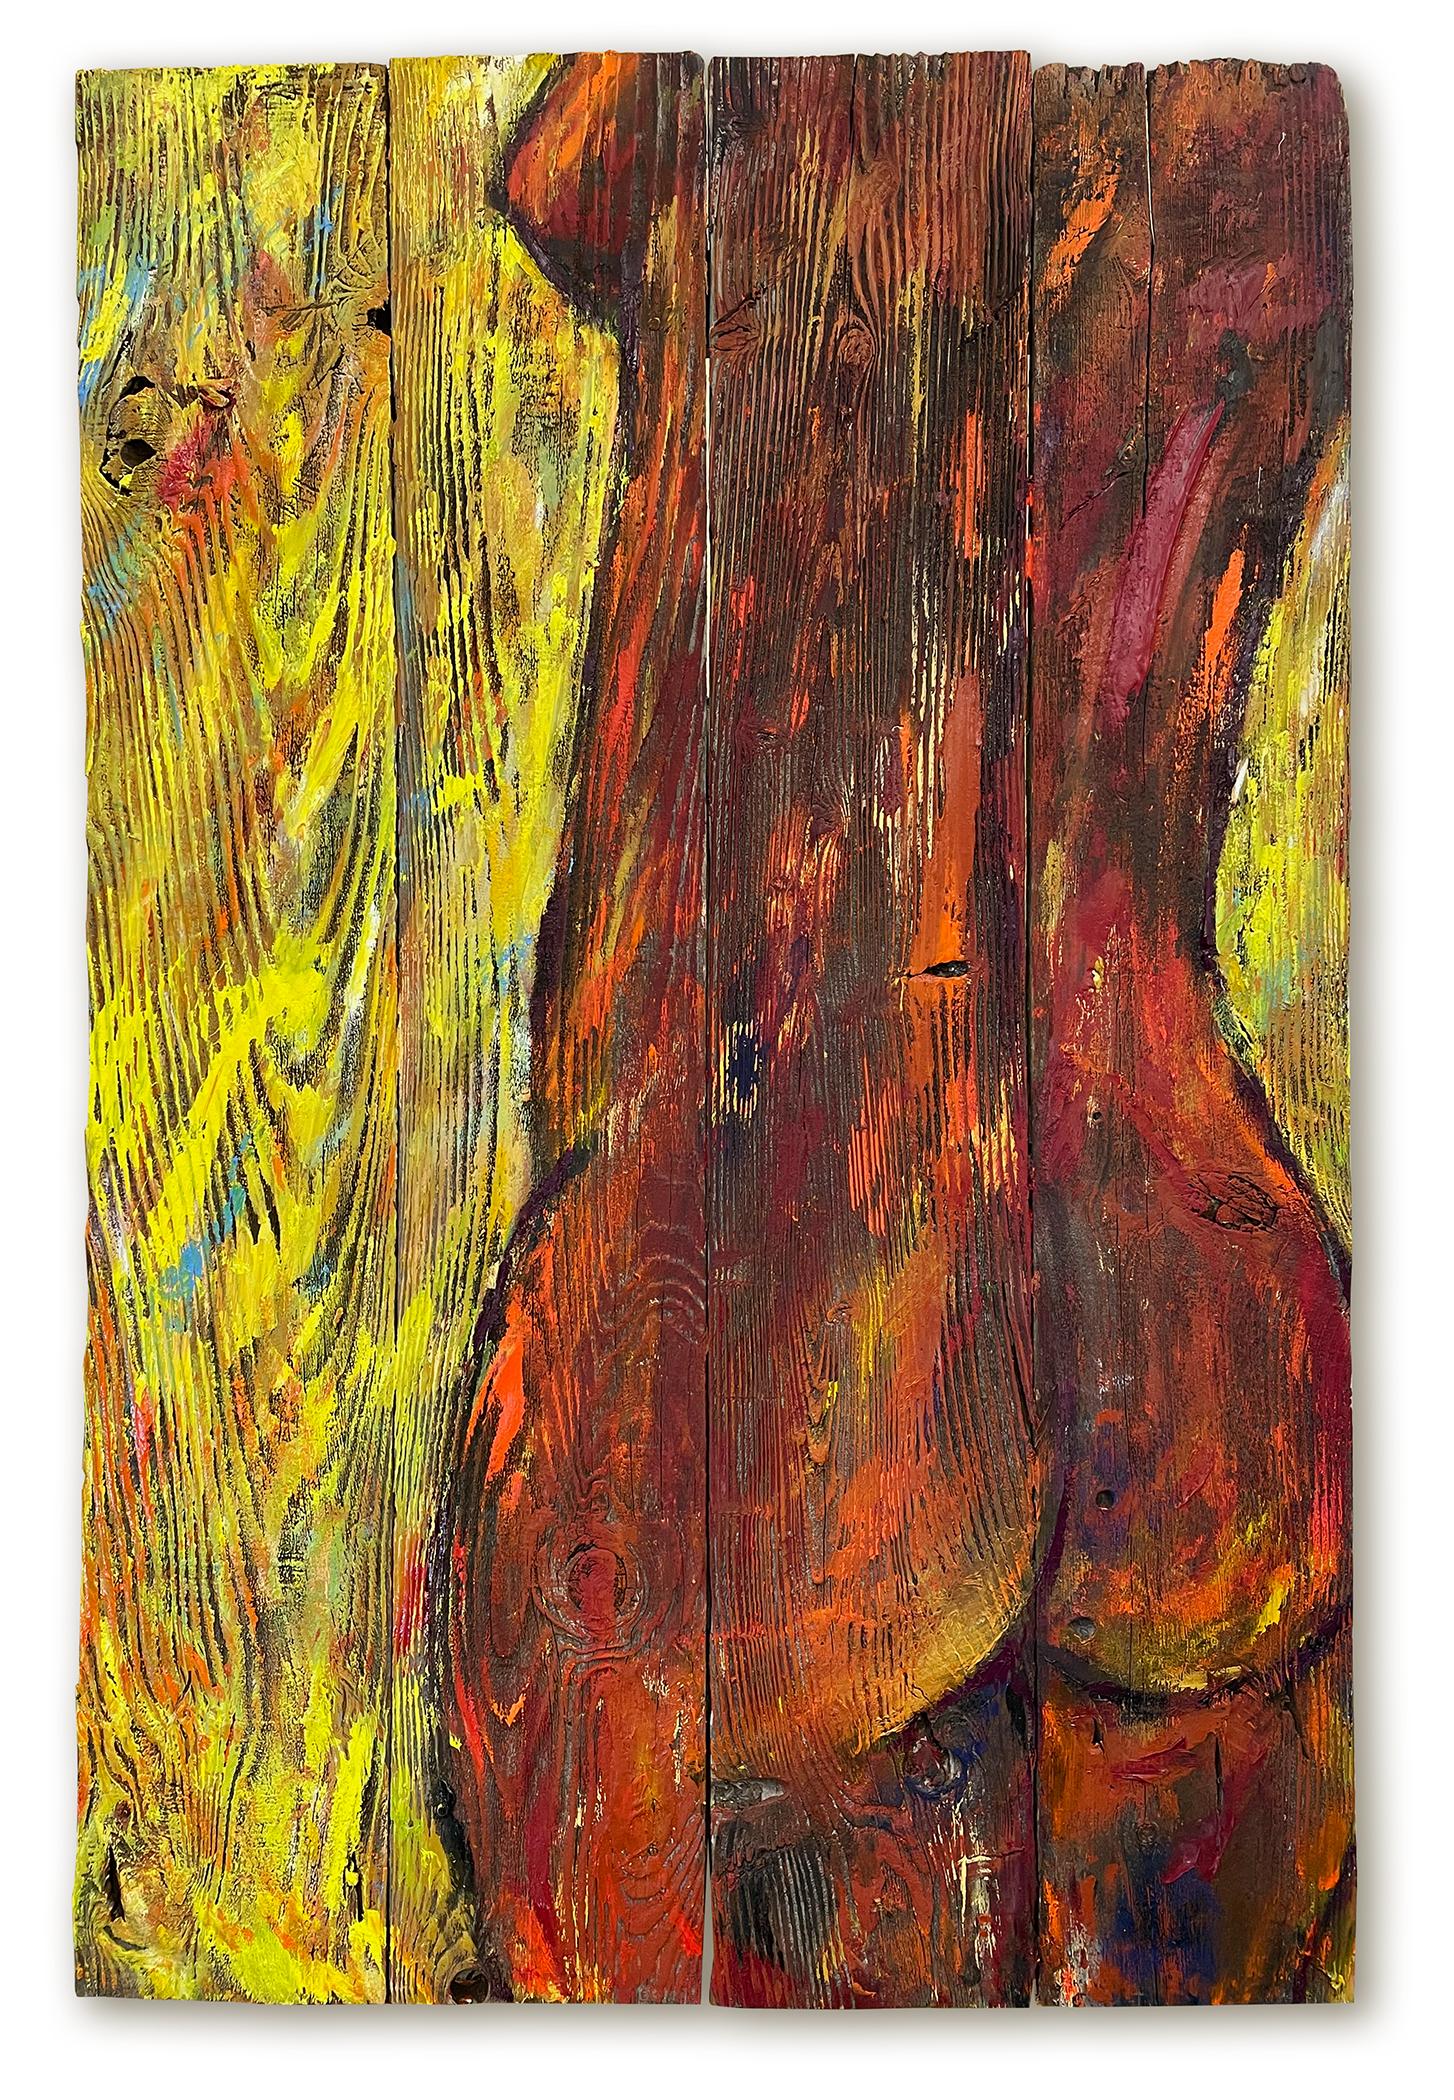 Nude Painting Kristy Chettle - 'Dances with Daffodils' - Femme nue texturée et colorée - Figuratif vibrant 